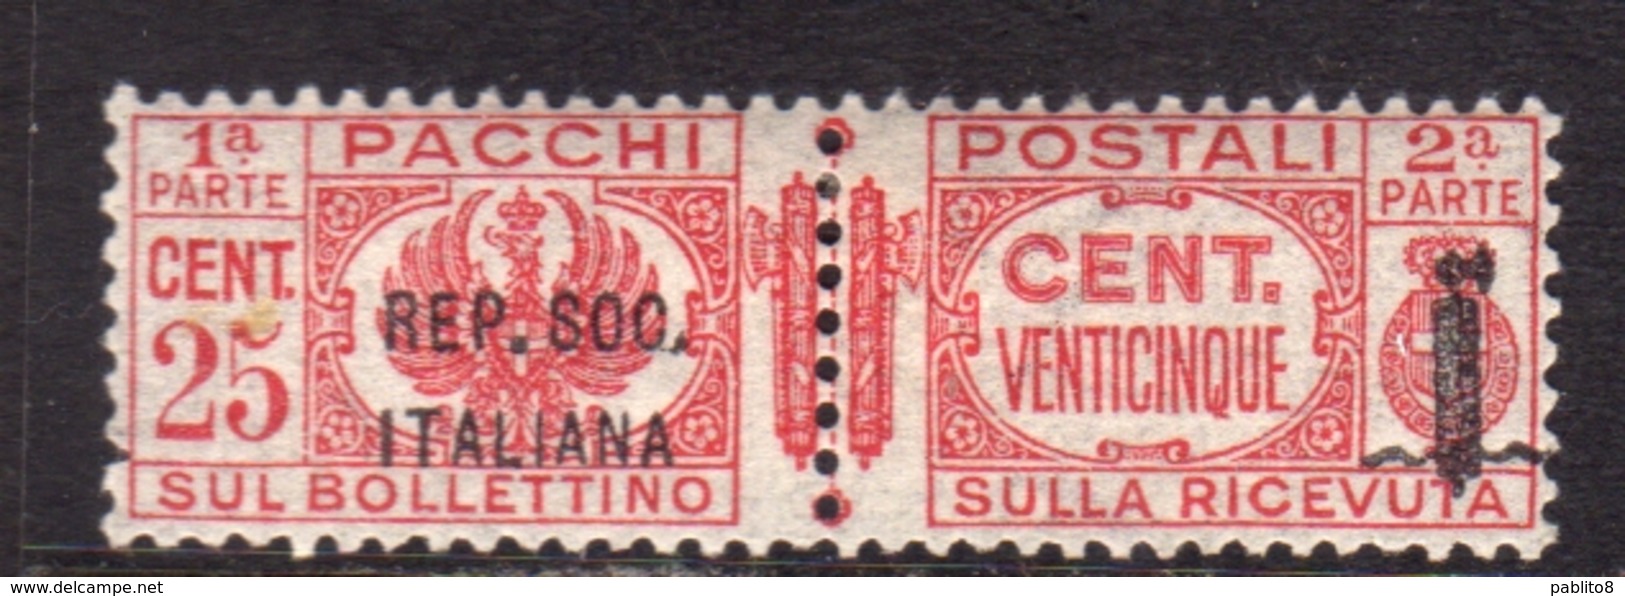 ITALIA REGNO ITALY KINGDOM 1944 RSI REPUBBLICA SOCIALE ITALIANA PACCHI POSTALI PARCEL POST FASCIO CENT. 25c MNH - Paketmarken